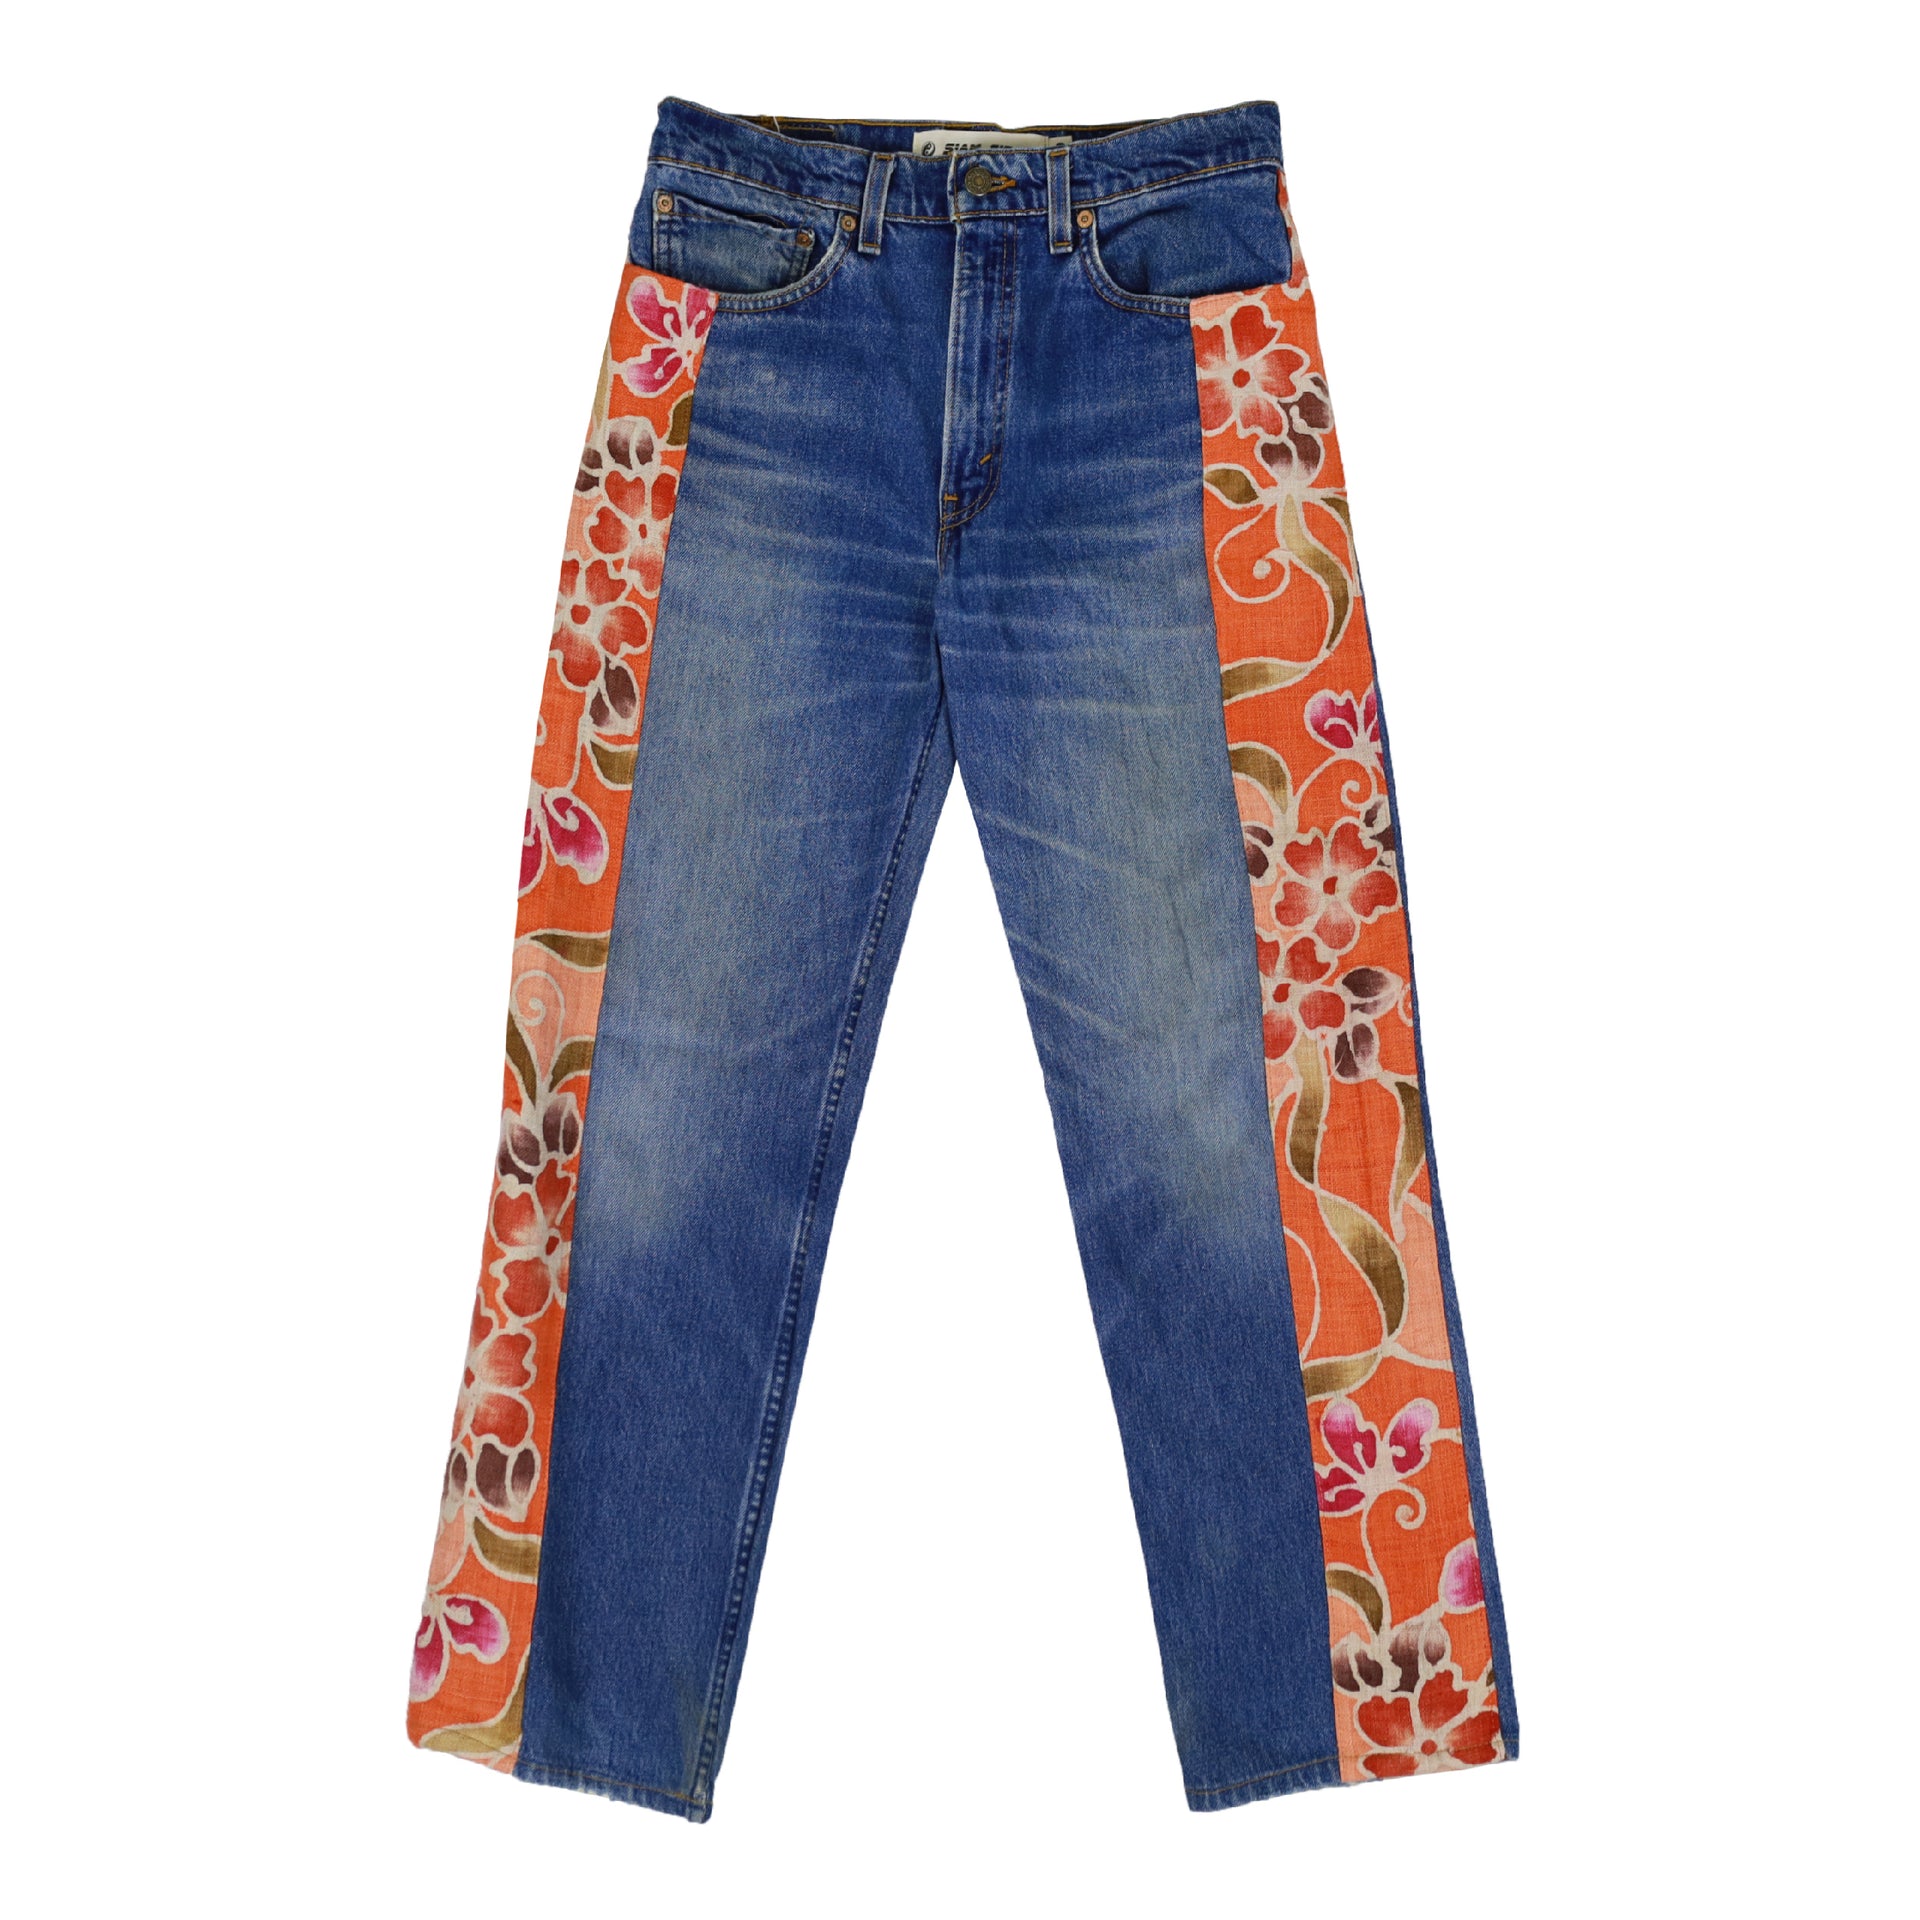 Hemp Flower Jeans